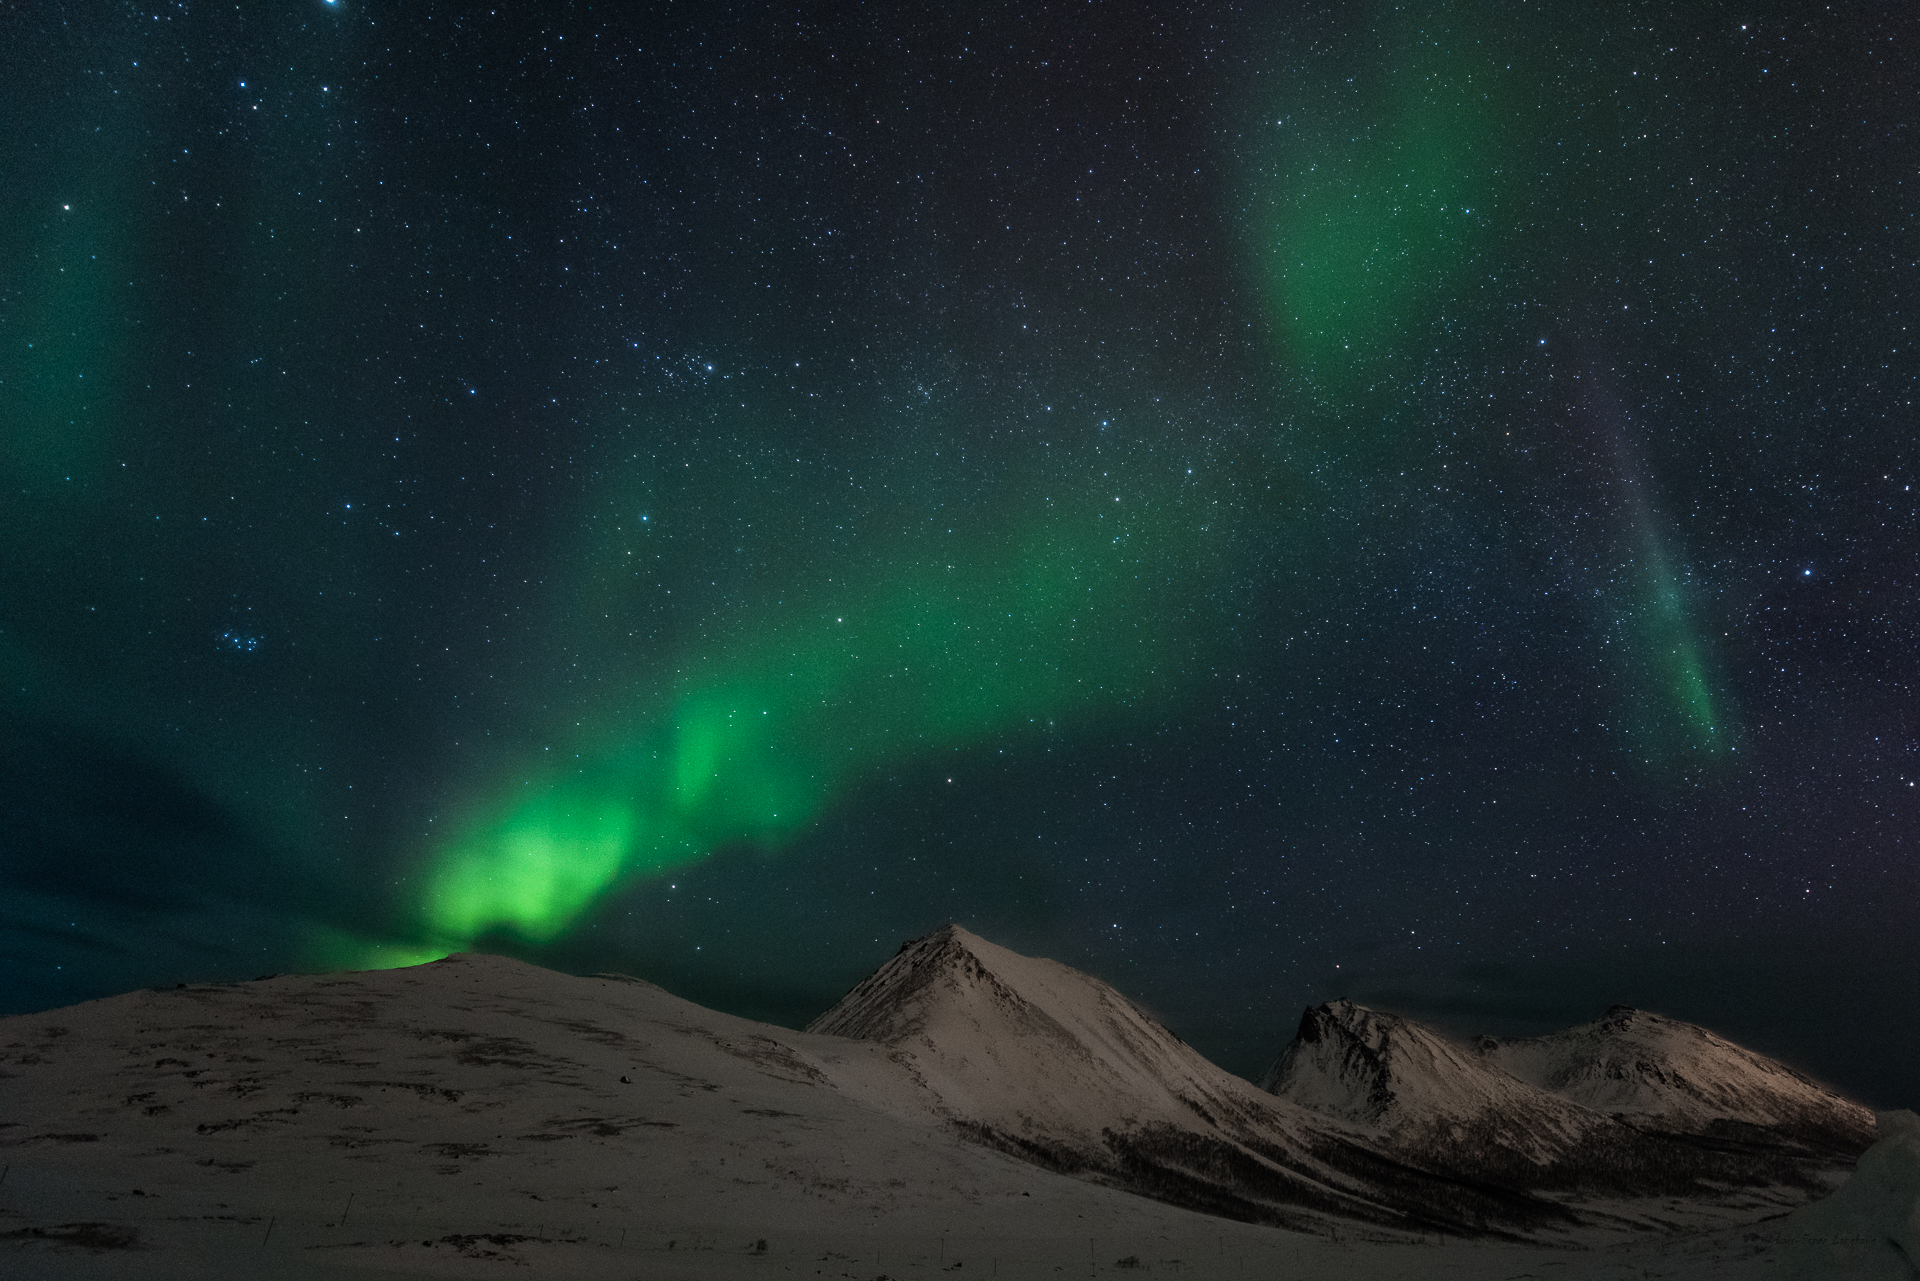 Скачать обои бесплатно Звезды, Ночь, Снег, Гора, Свет, Северное Сияние, Норвегия, Ландшафт, Земля/природа картинка на рабочий стол ПК